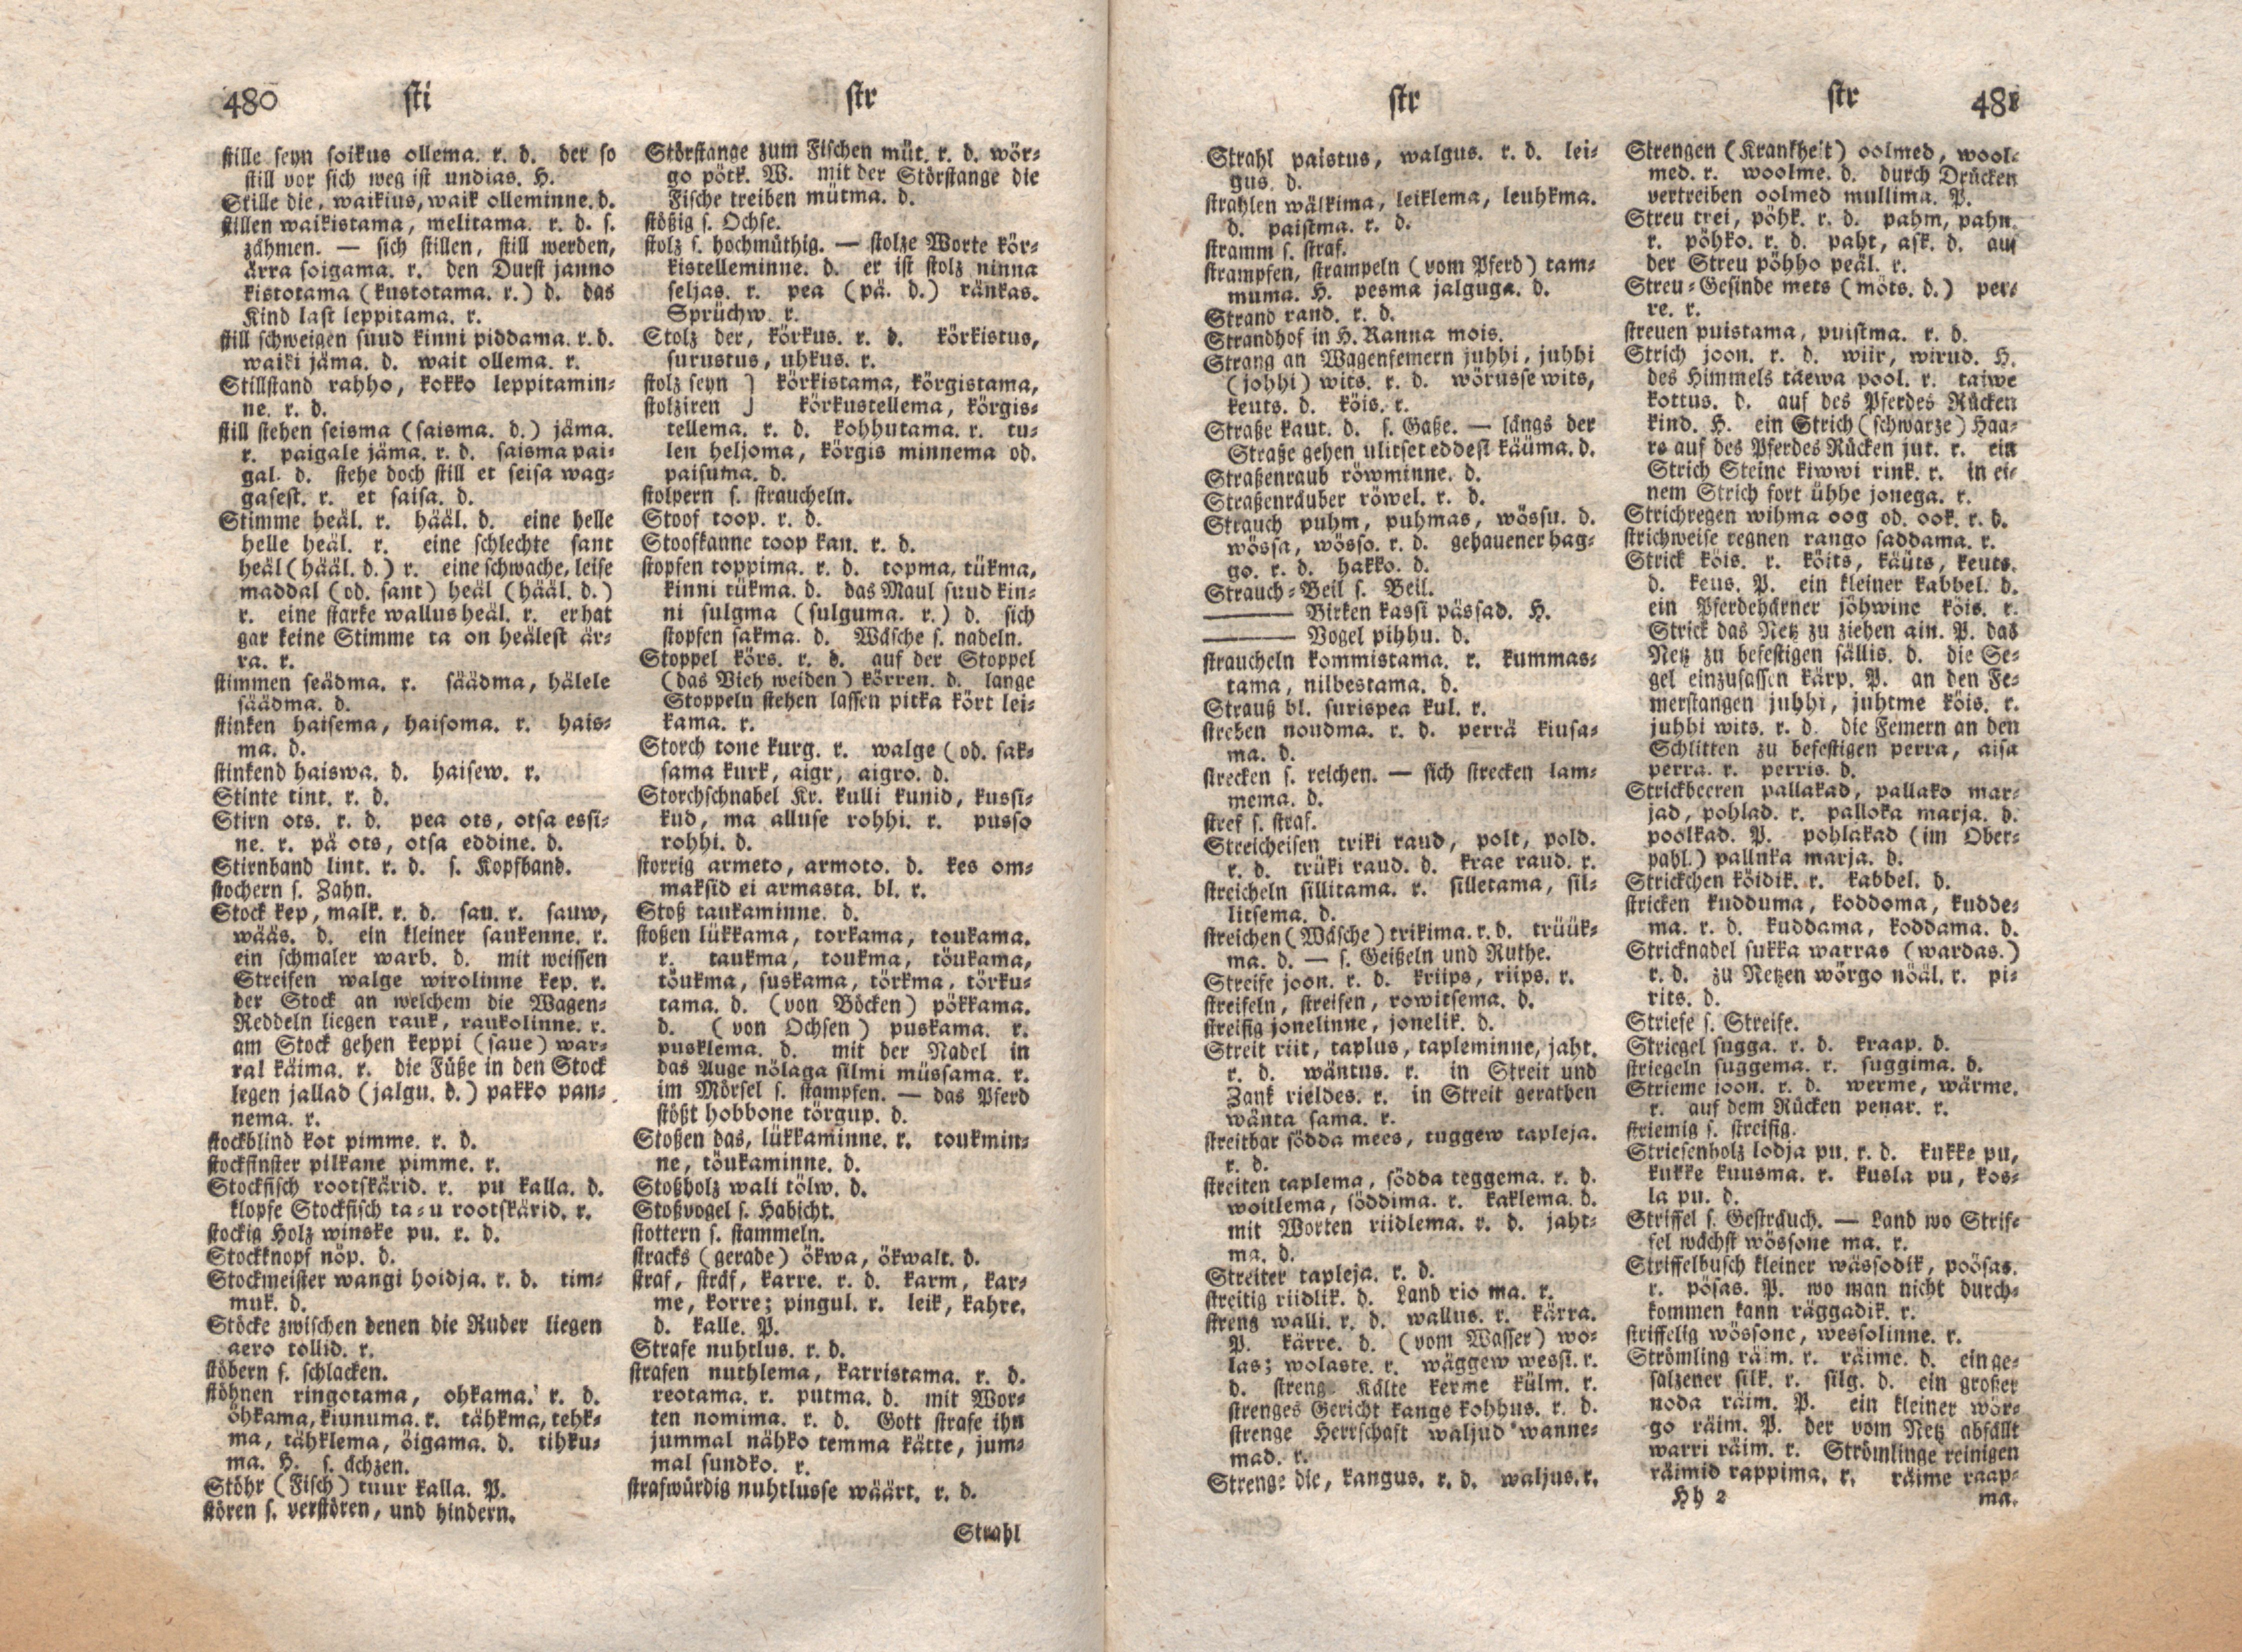 Ehstnische Sprachlehre für beide Hauptdialekte (1780) | 251. (480-481) Main body of text